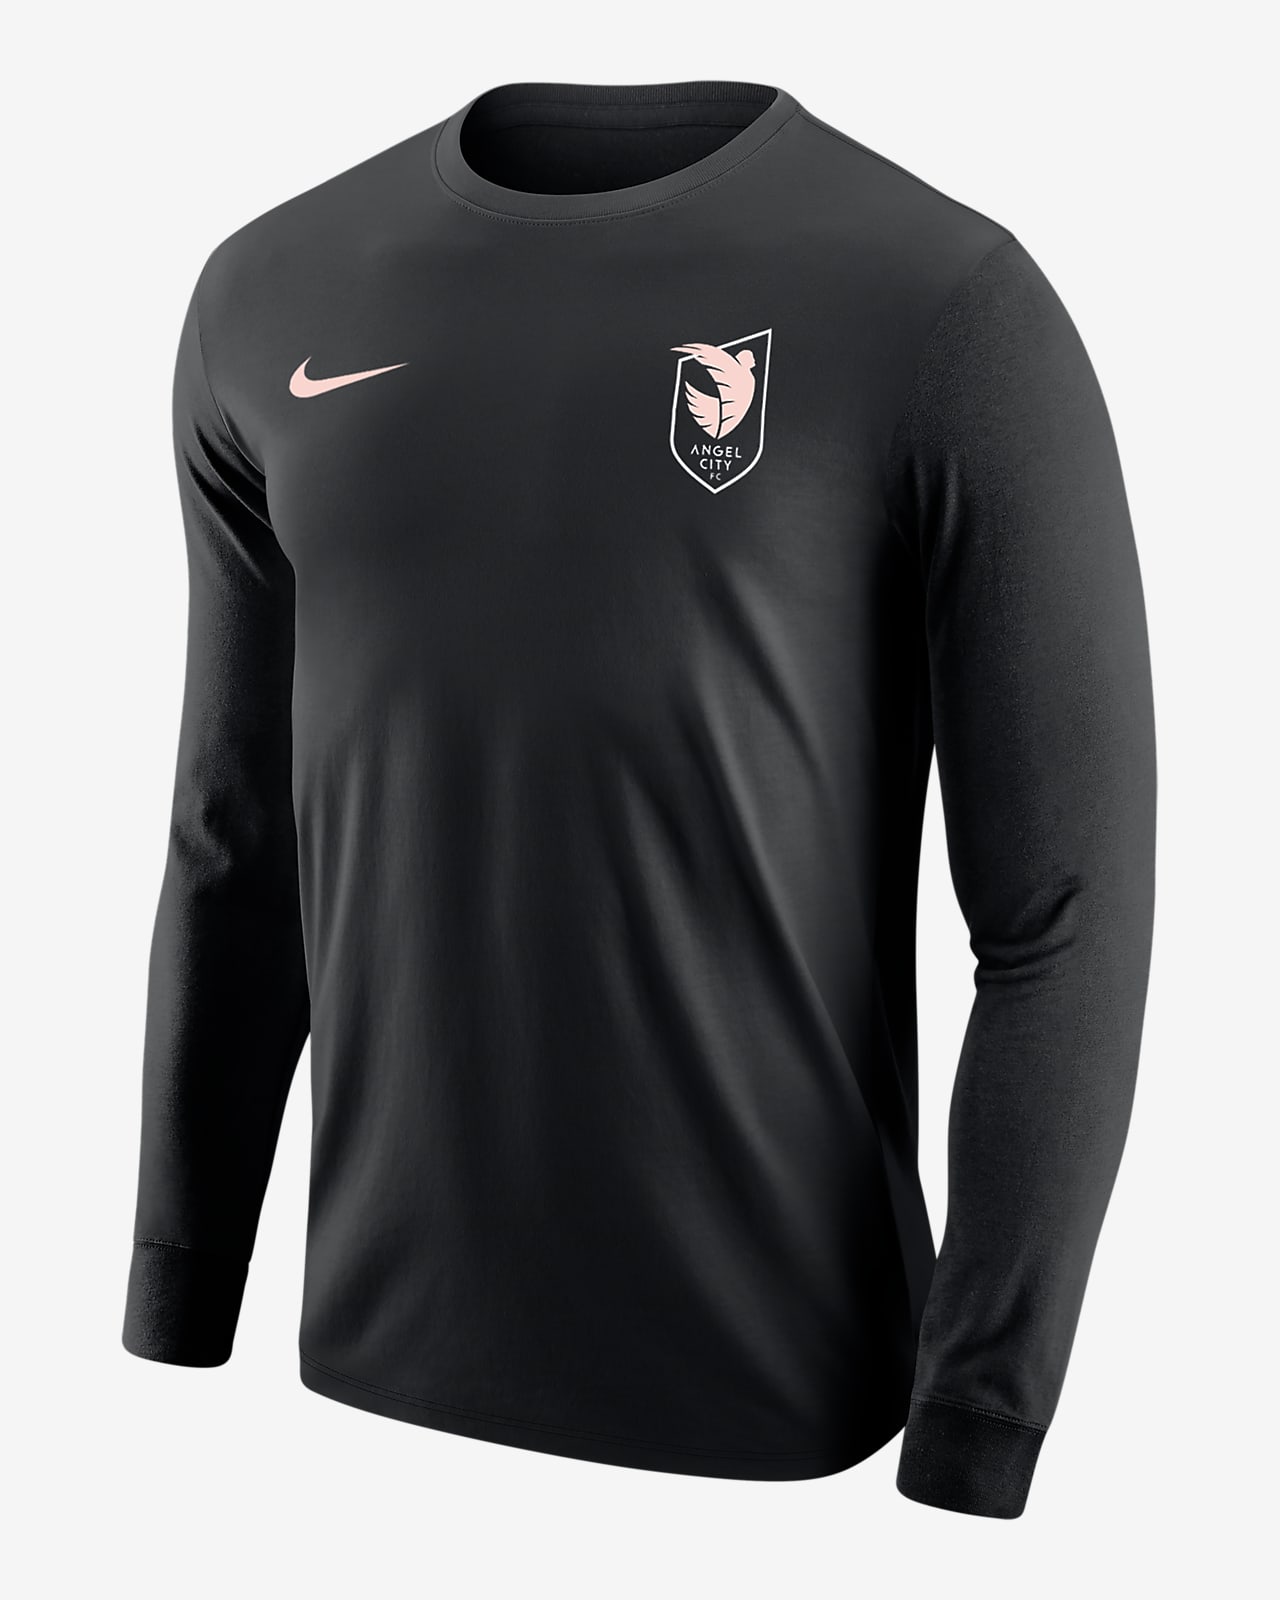 Angel City FC Men's Nike Soccer Long-Sleeve T-Shirt